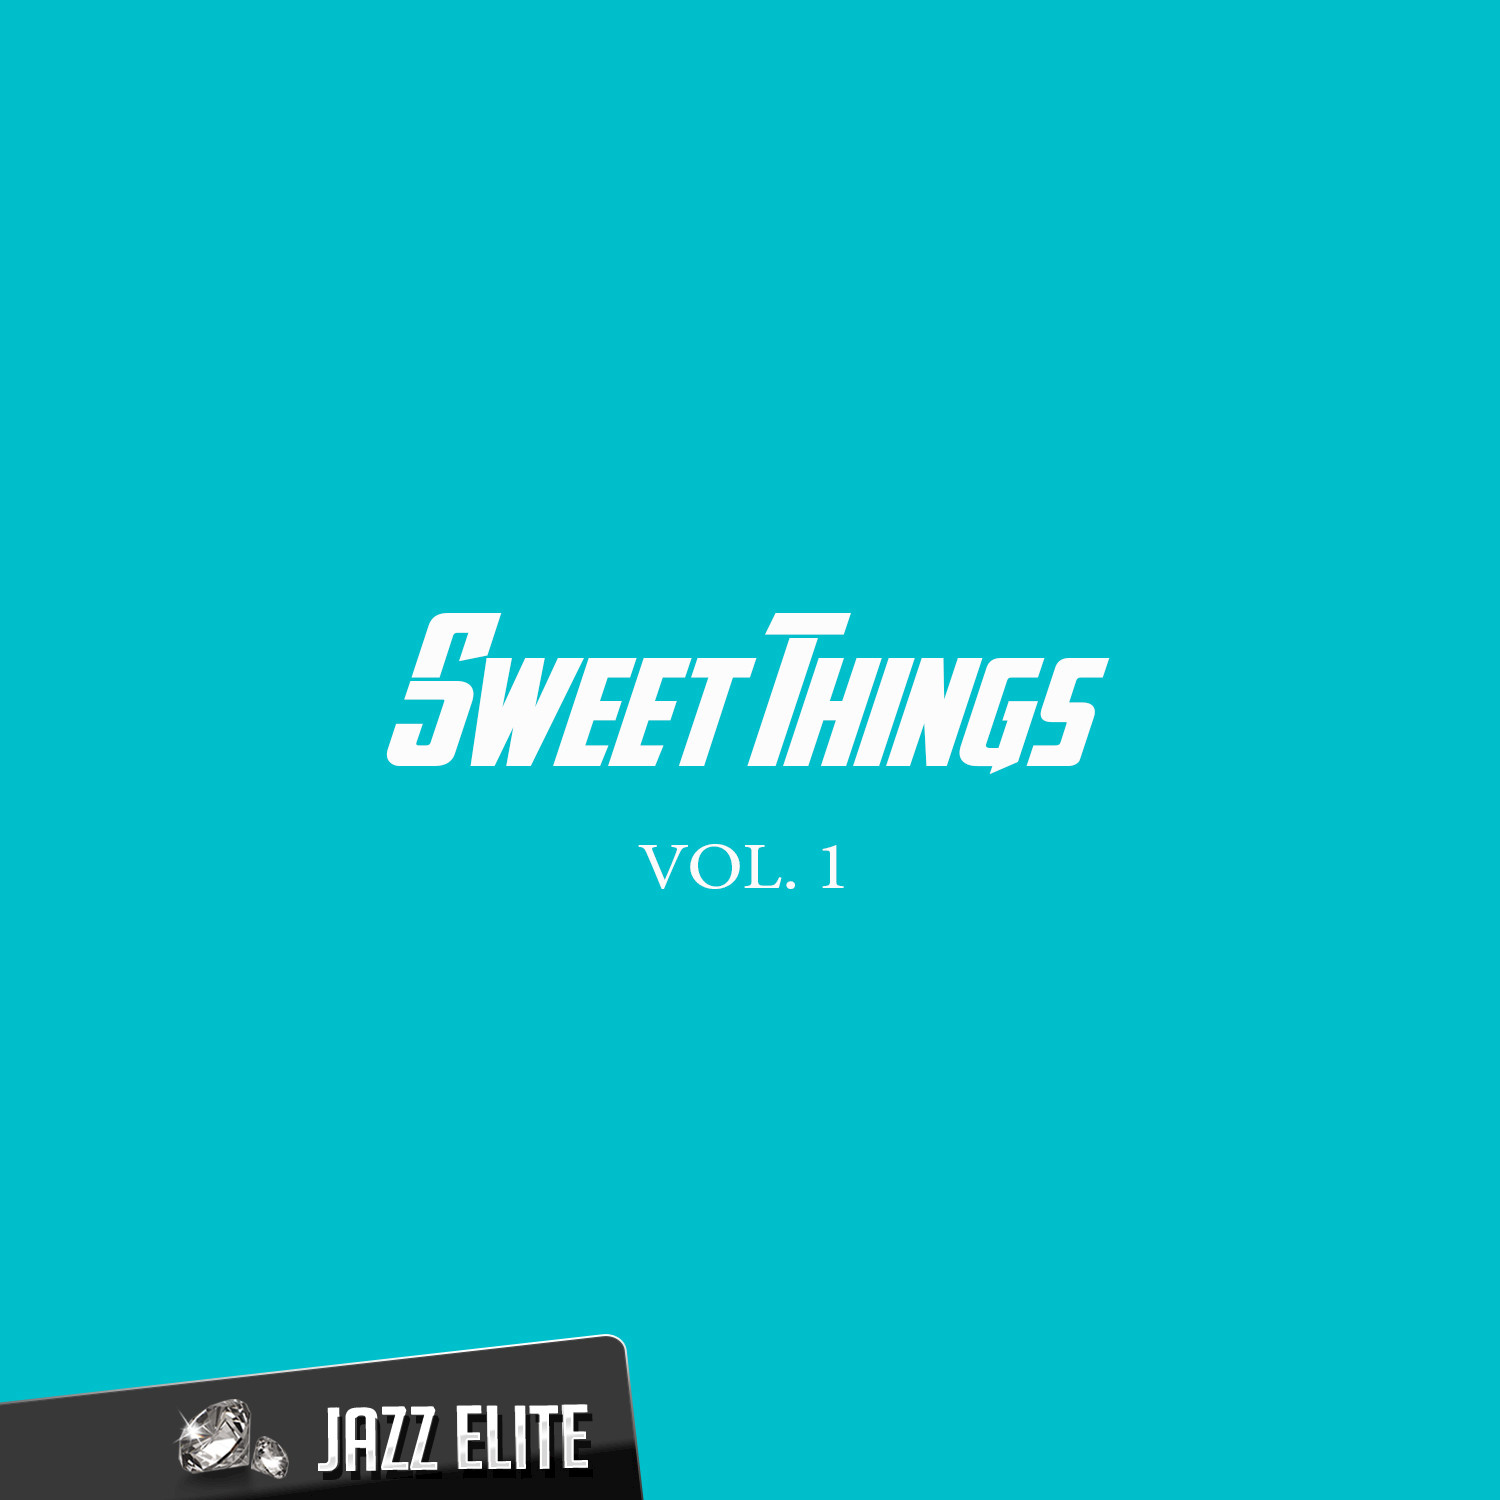 Sweet Things, Vol. 1